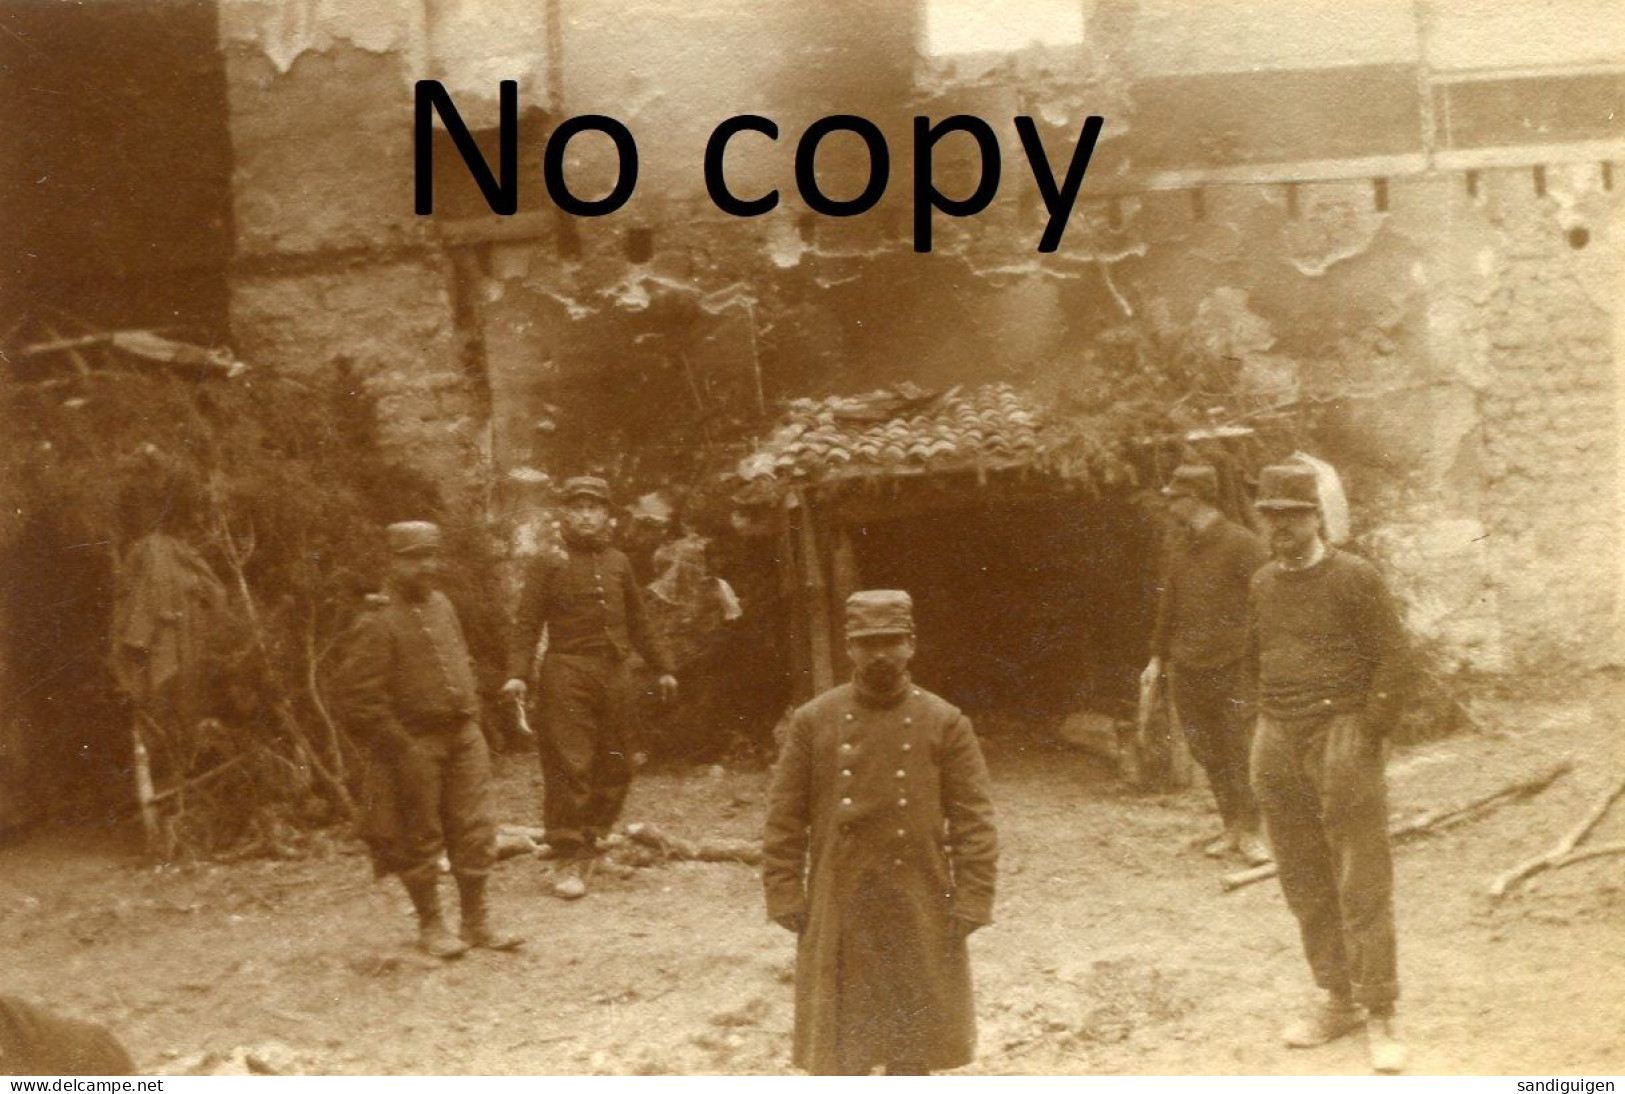 PHOTO FRANCAISE - POILUS DEVANT UNE MAISON INCENDIEE A SAINT HILAIRE AU TEMPLE PRES DE CUPERLY MARNE - GUERRE 1914 1918 - Guerre, Militaire